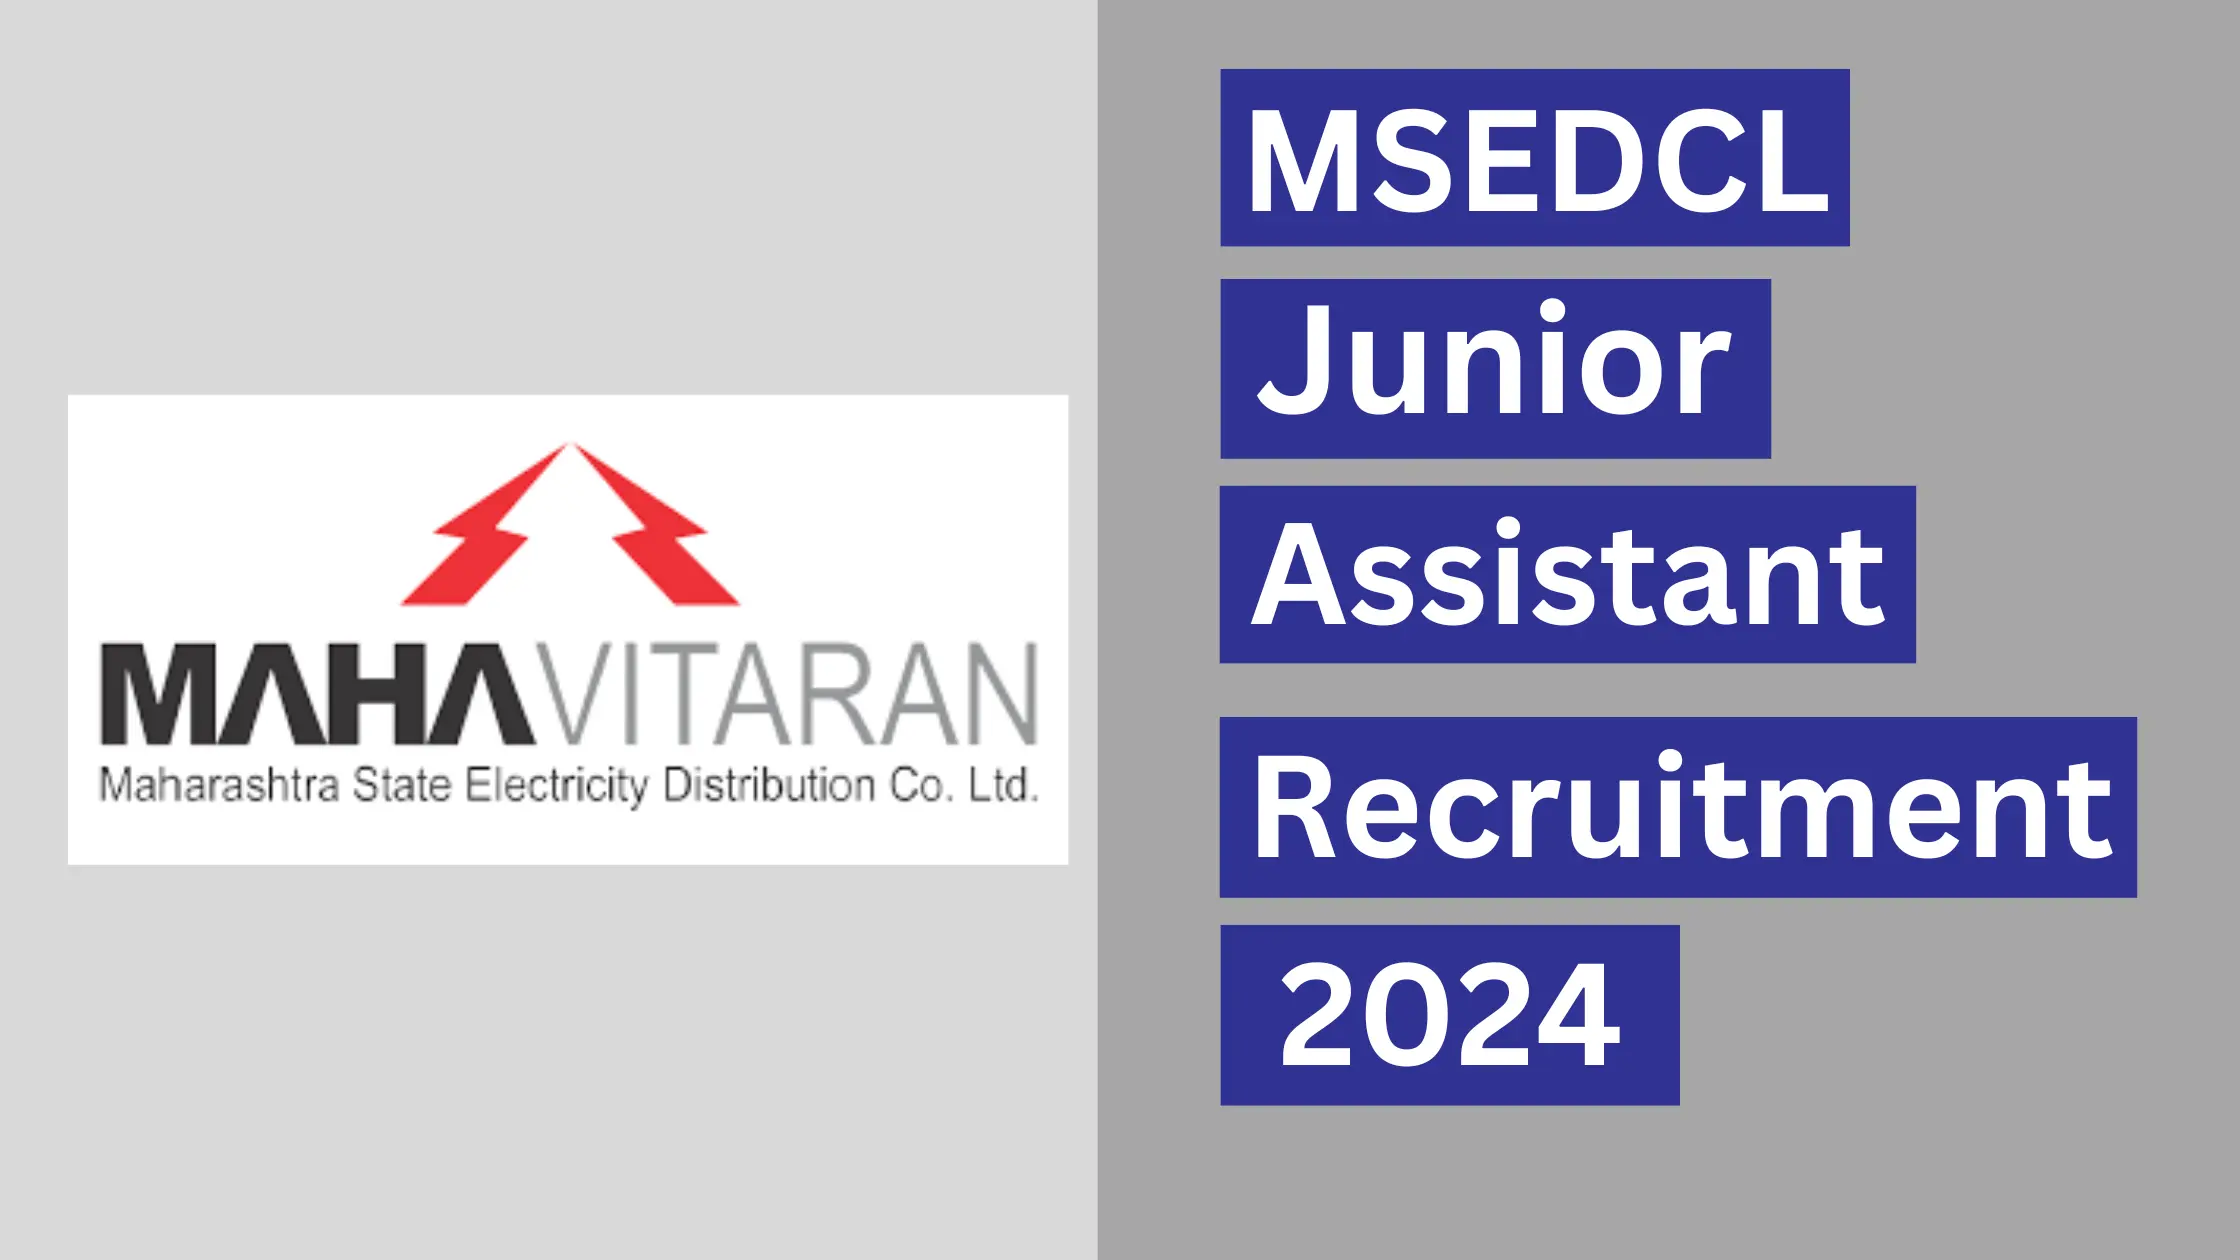 MSEDCL Junior Assistant Recruitment 2024